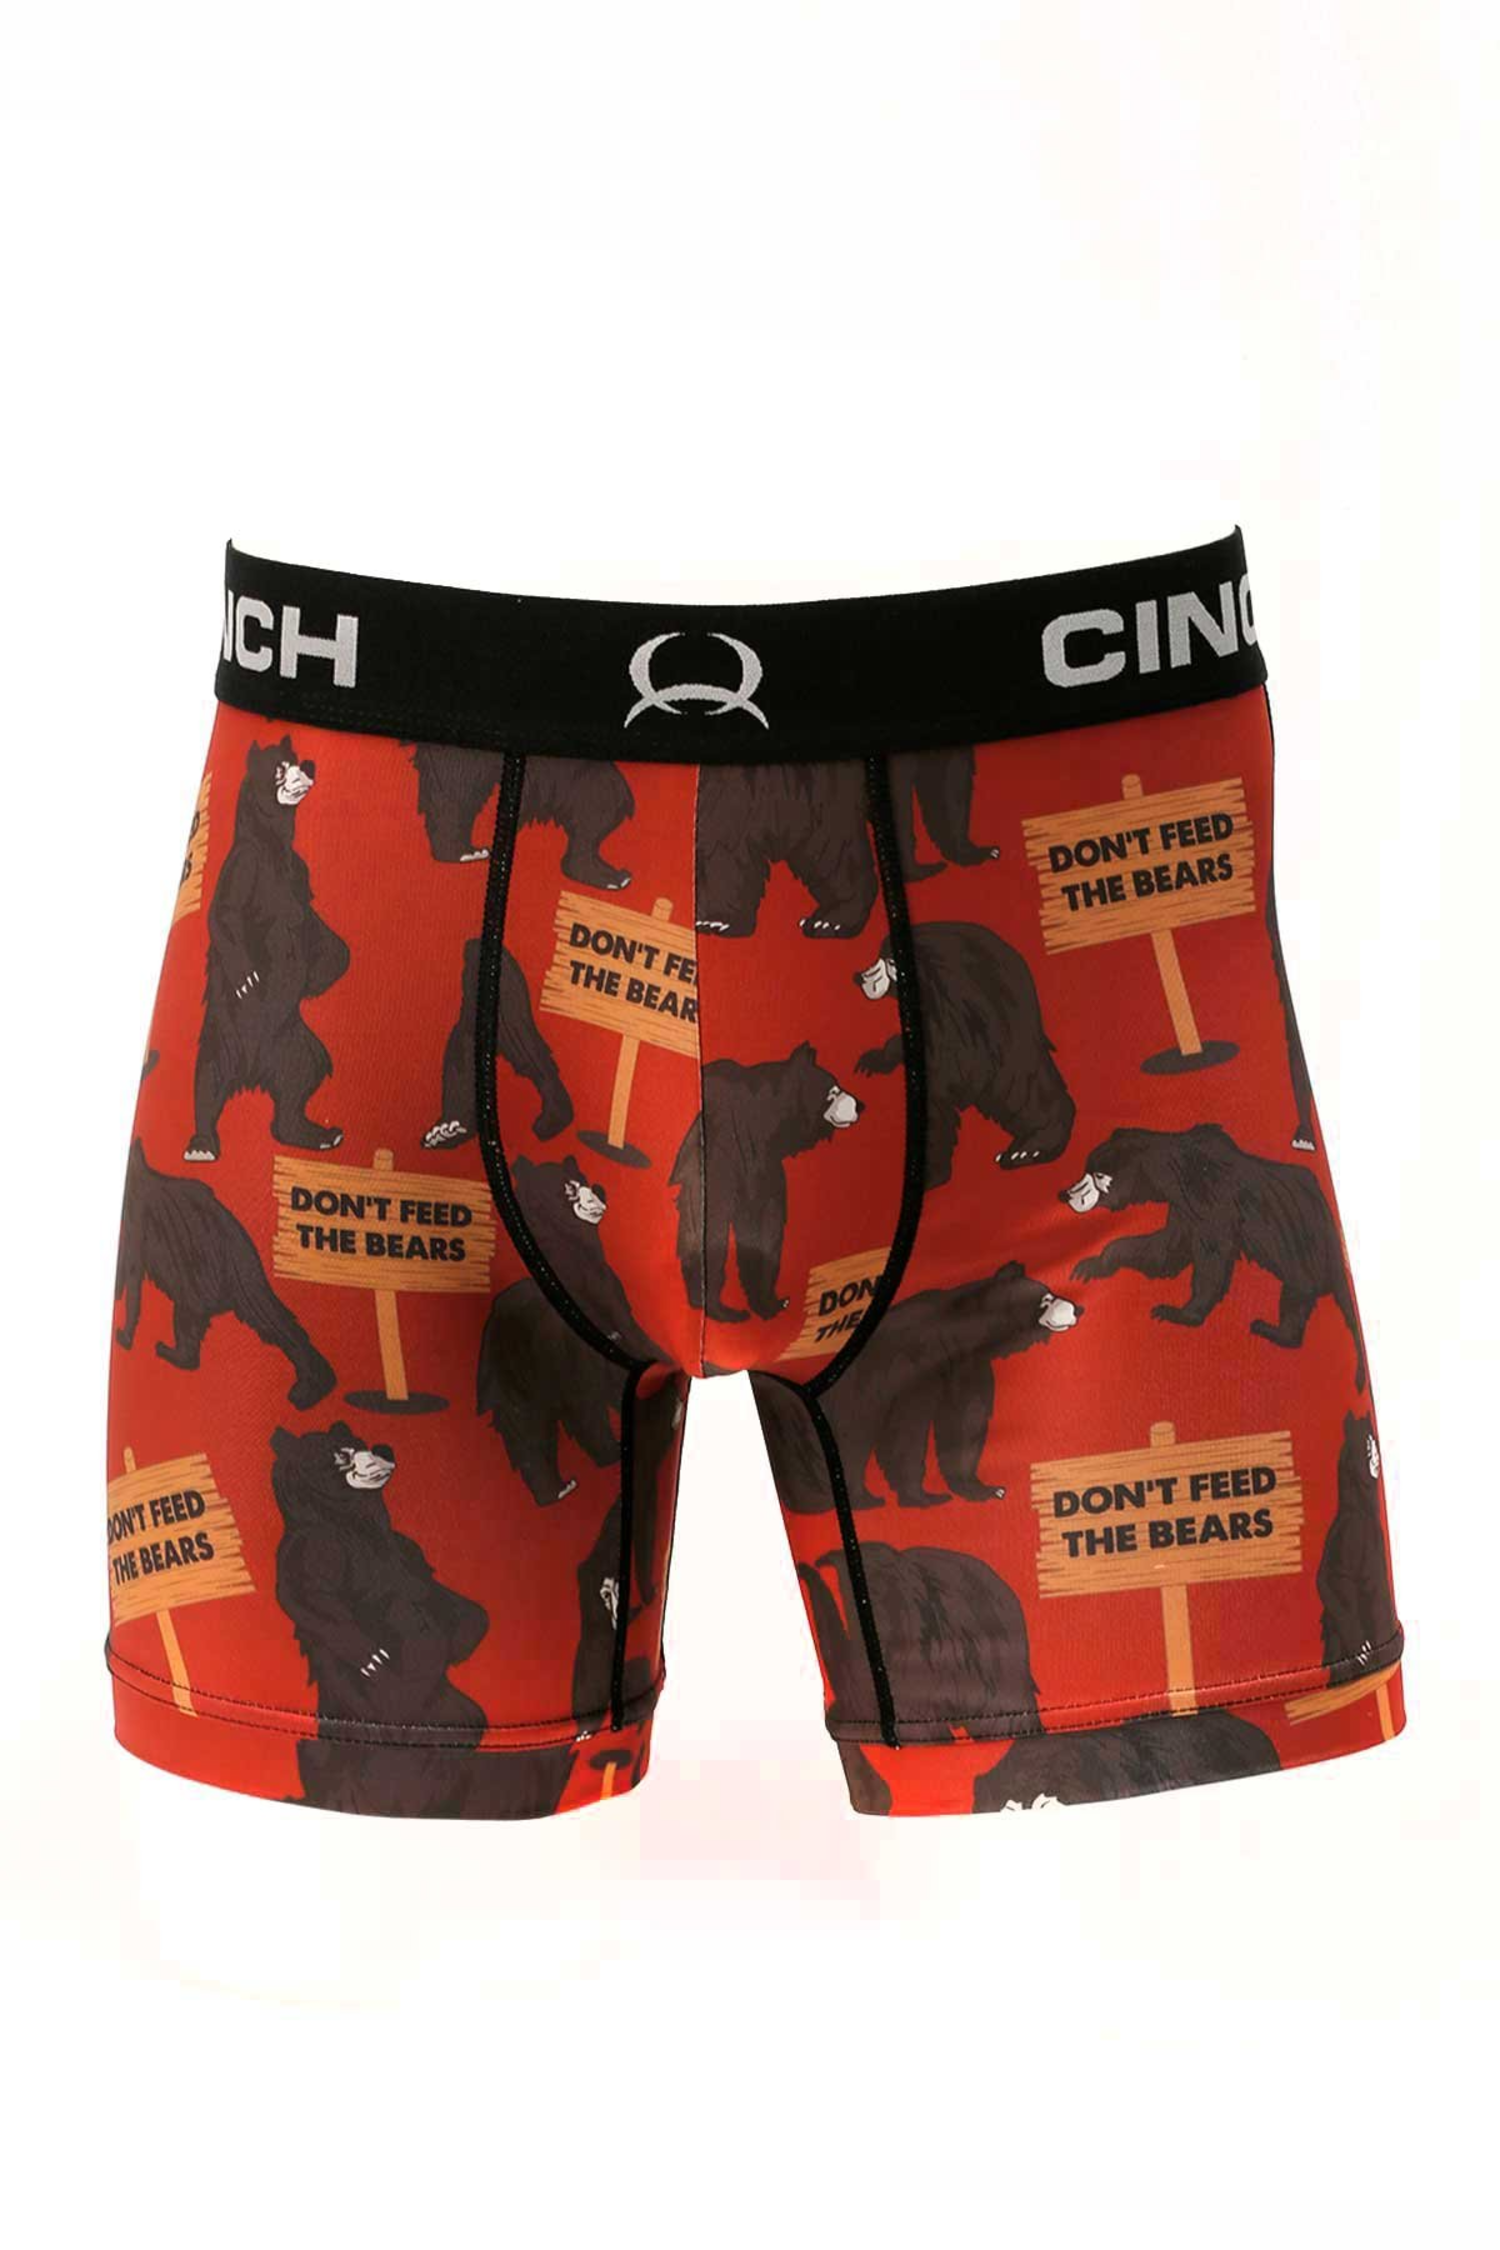 https://cdn.shoplightspeed.com/shops/633771/files/52103215/1500x4000x3/cinch-6-bears-boxer-briefs-red.jpg